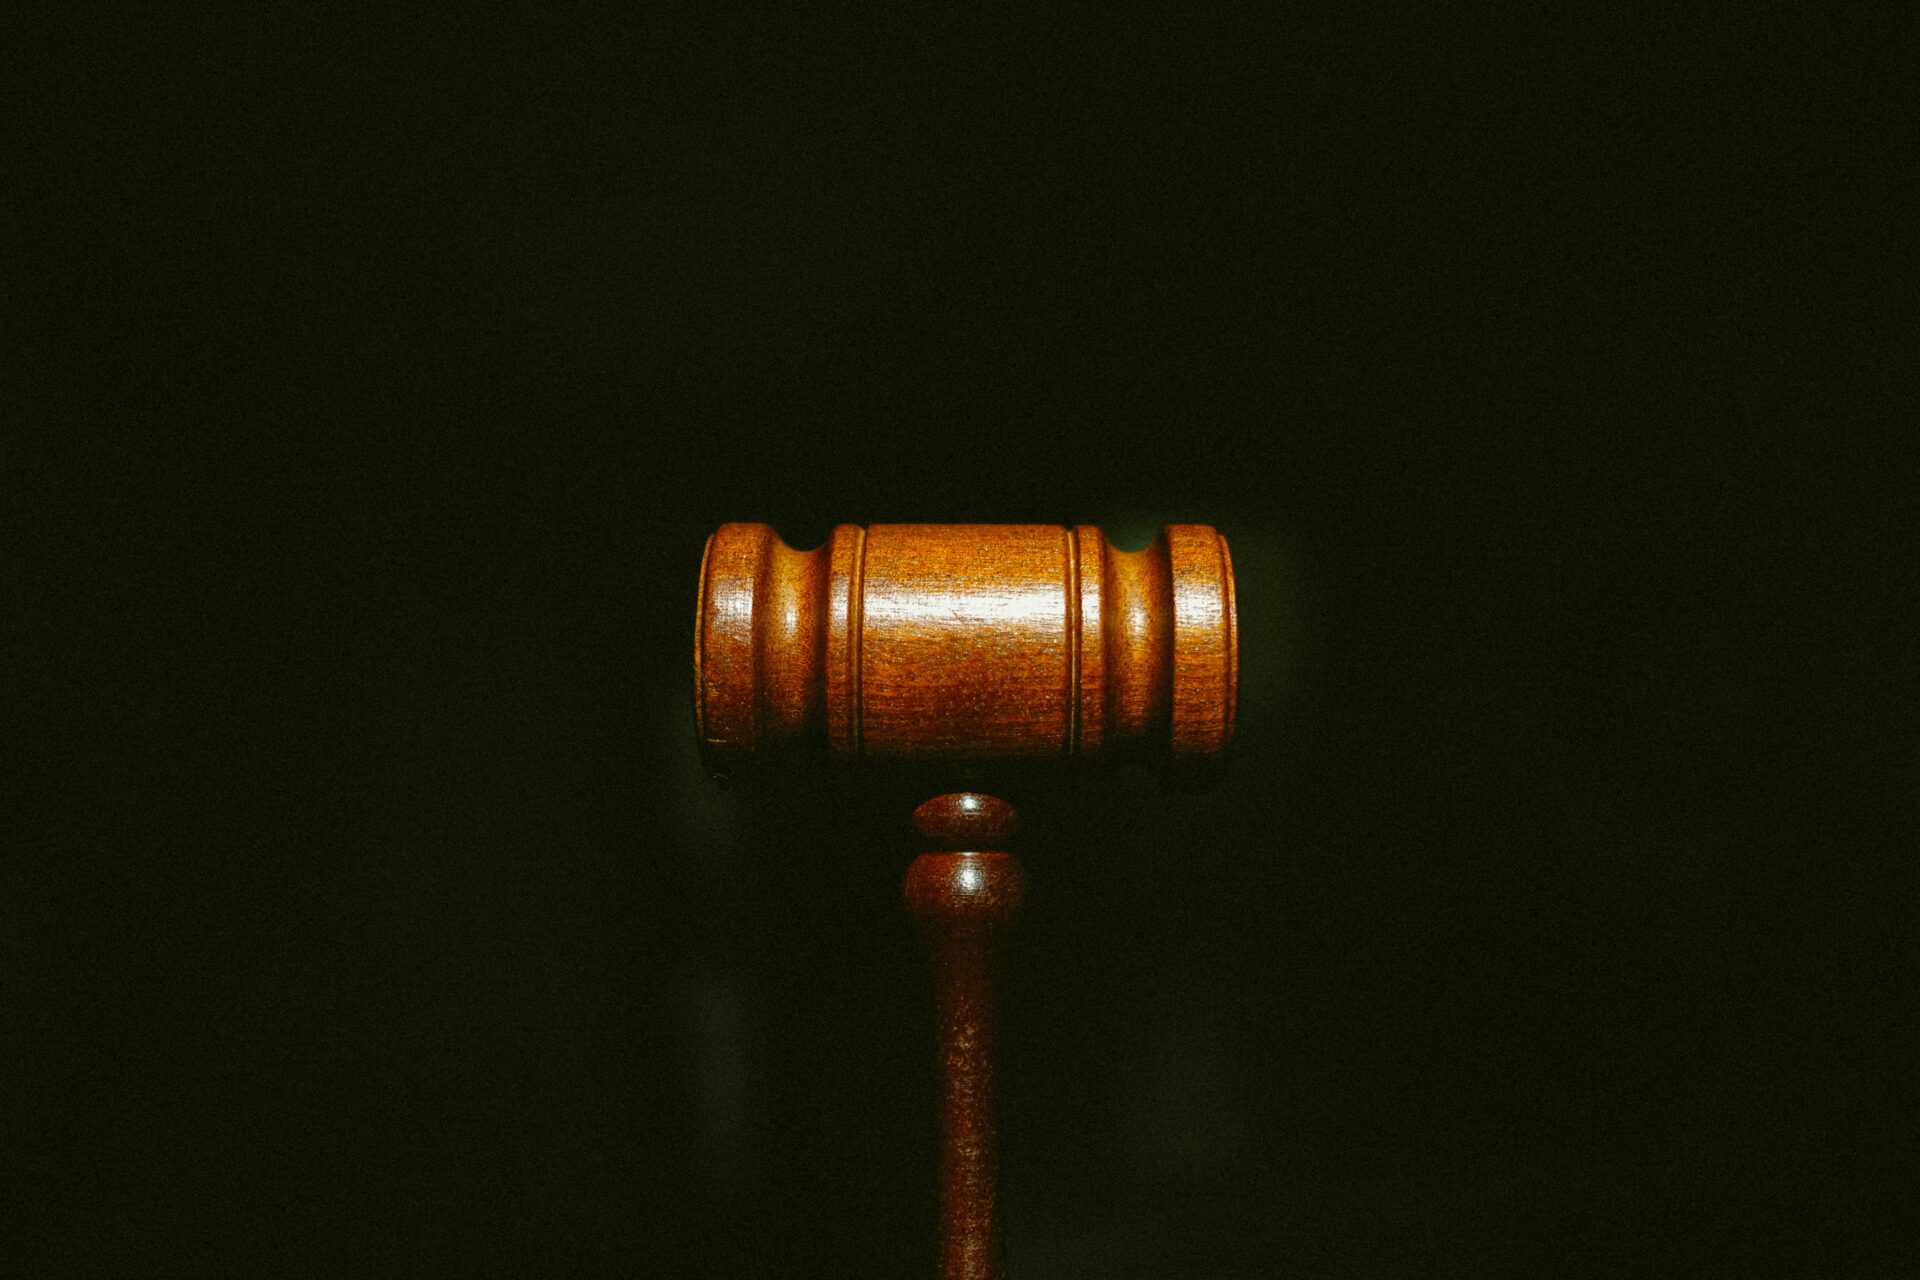 A wooden gavel.